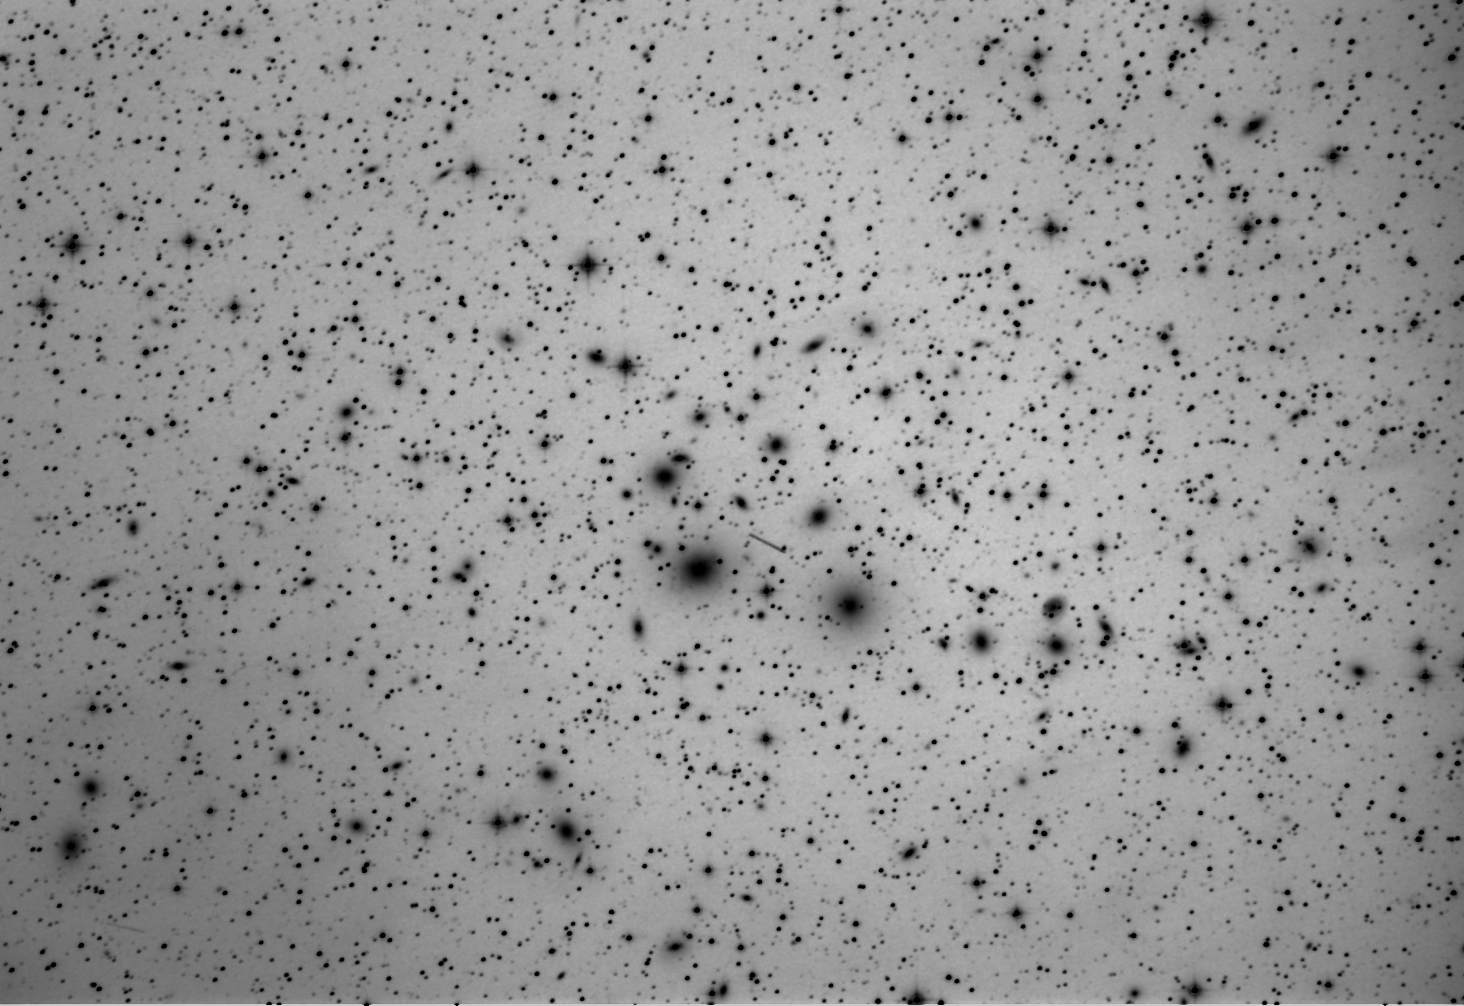 Ammasso di galassie Abell 426 + Asteroide 998 Bodea